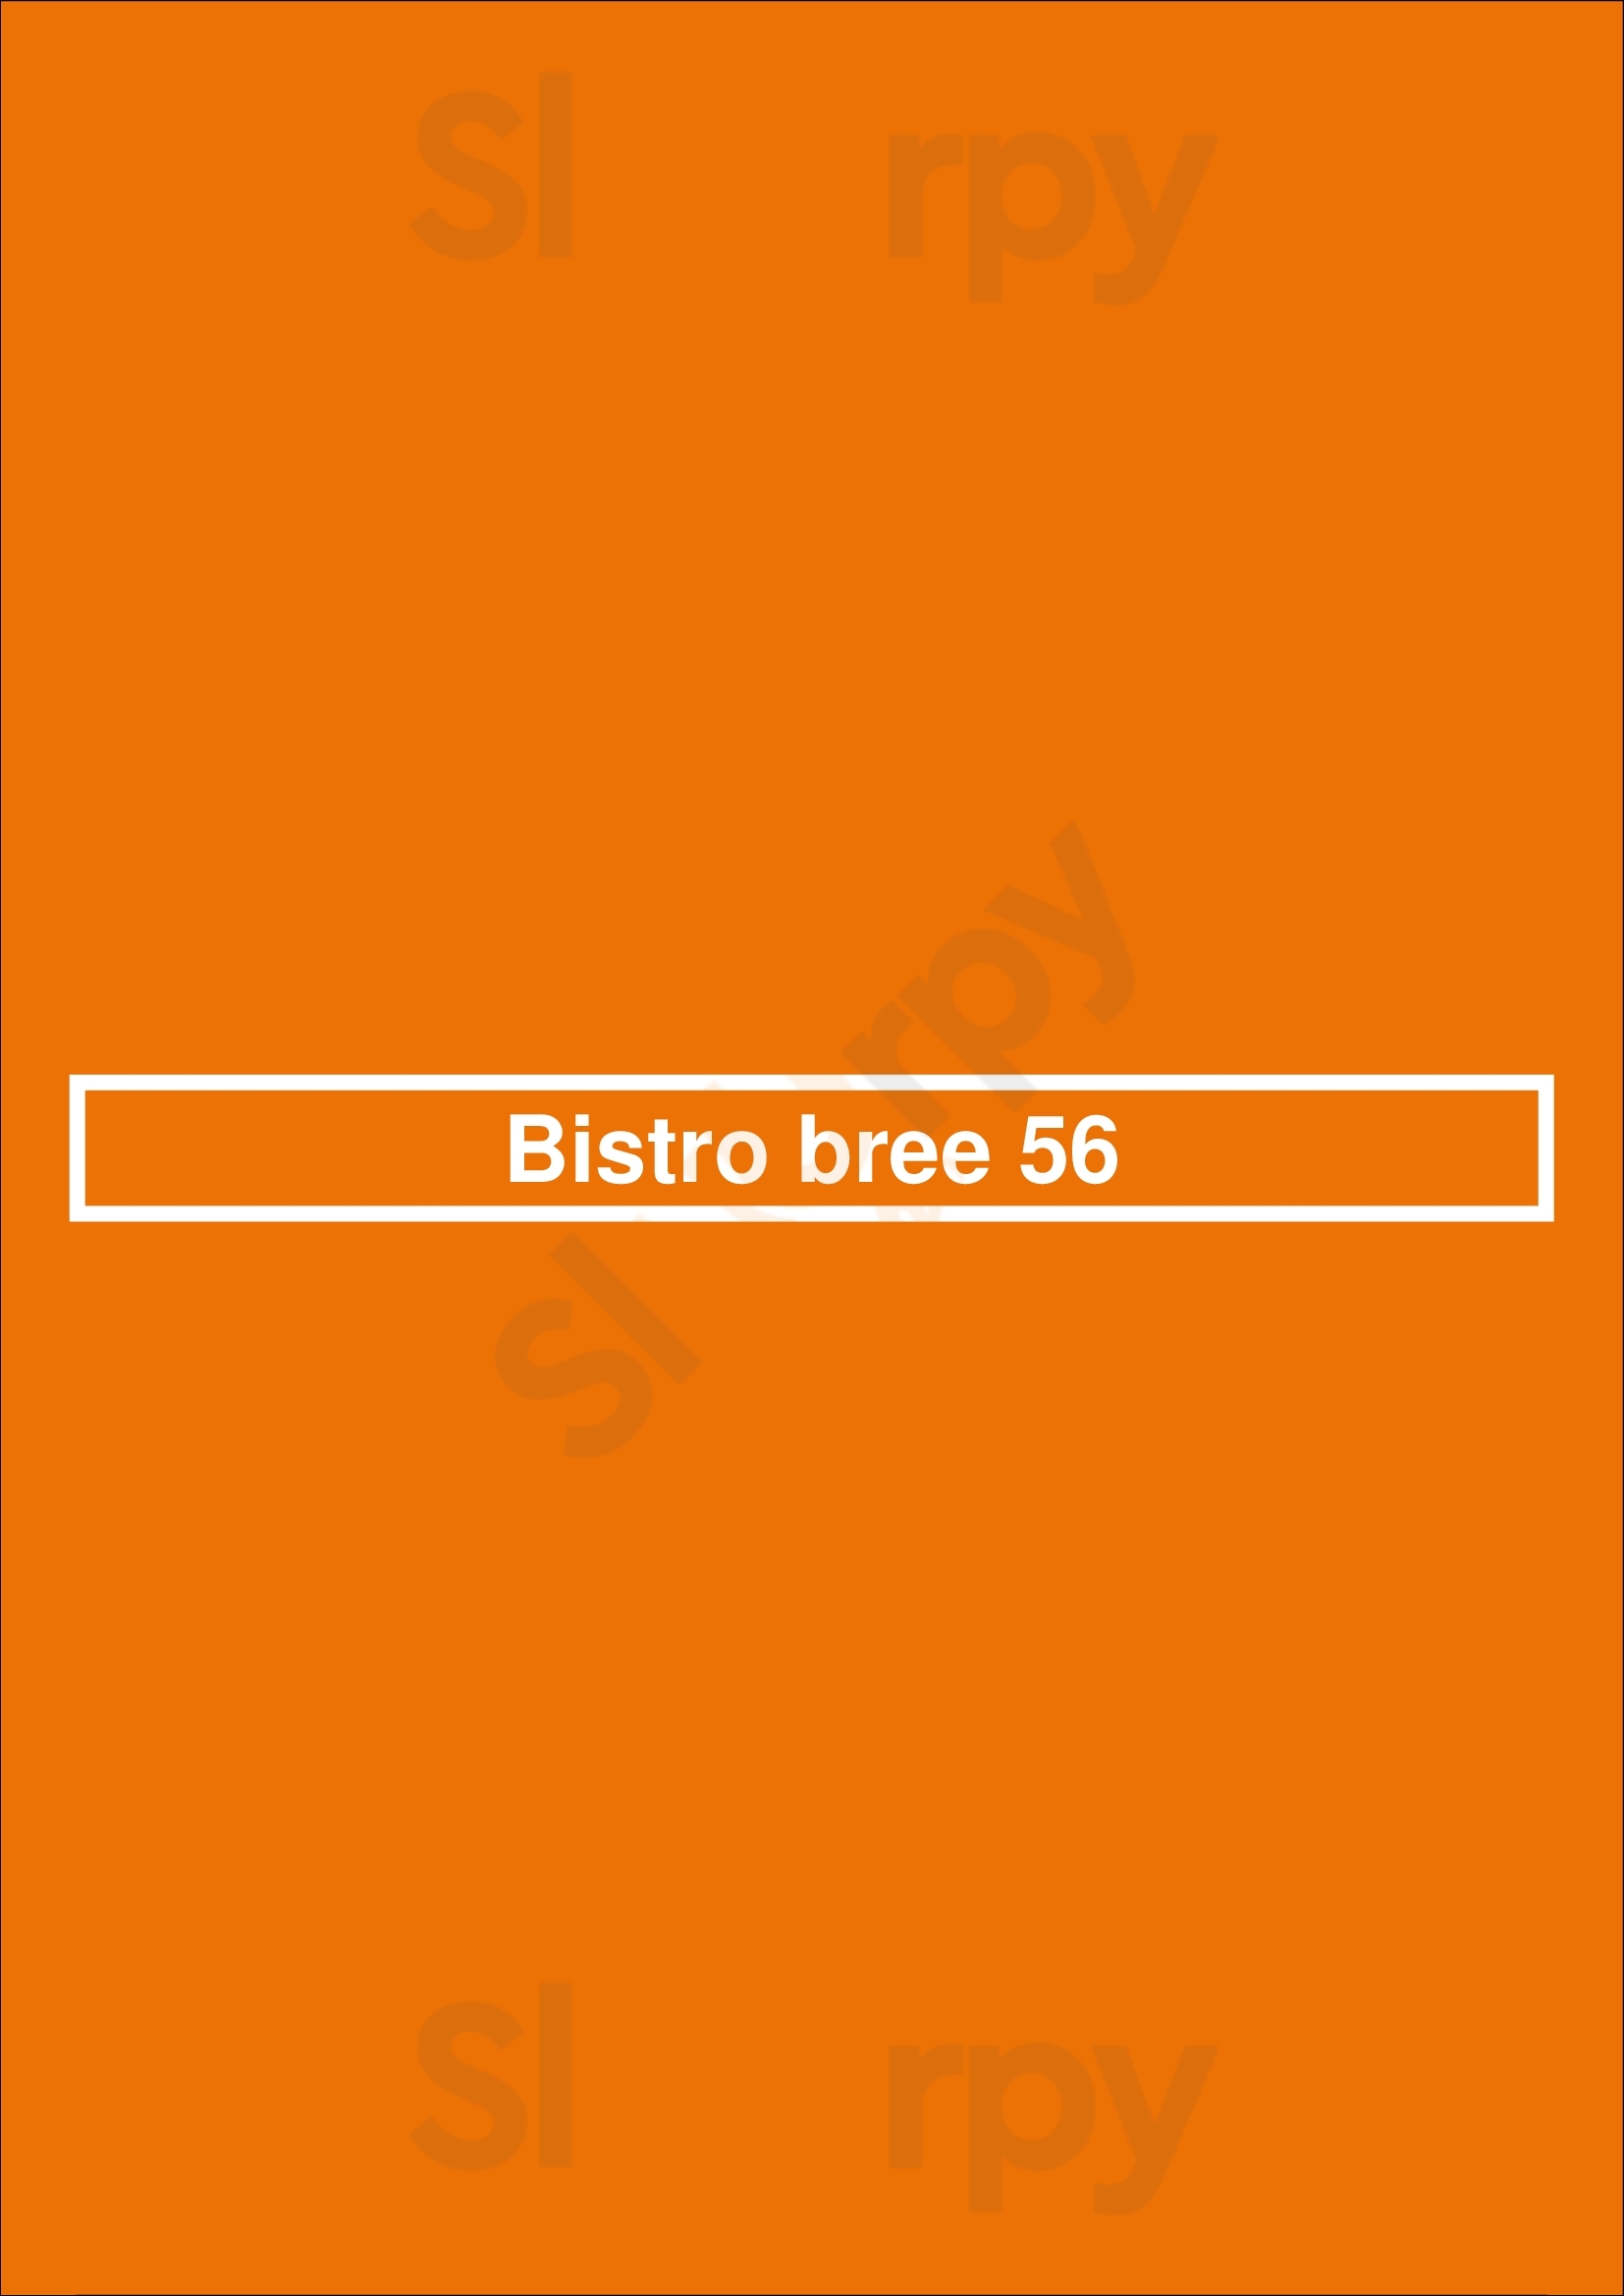 Bistro Bree 56 Leiden Menu - 1